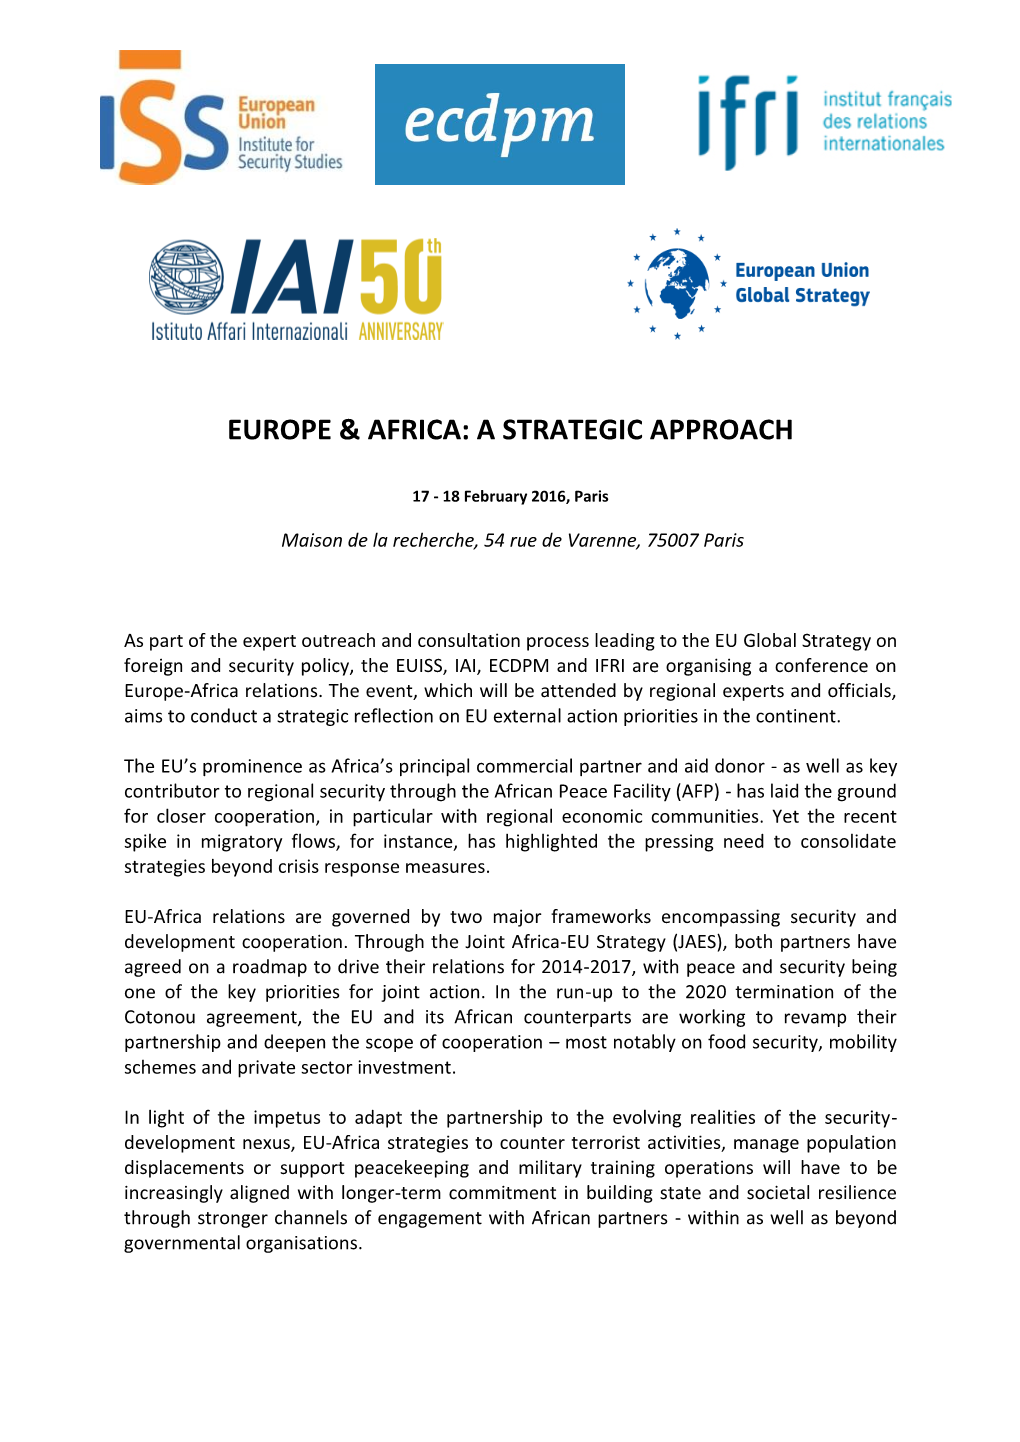 Europe & Africa: a Strategic Approach